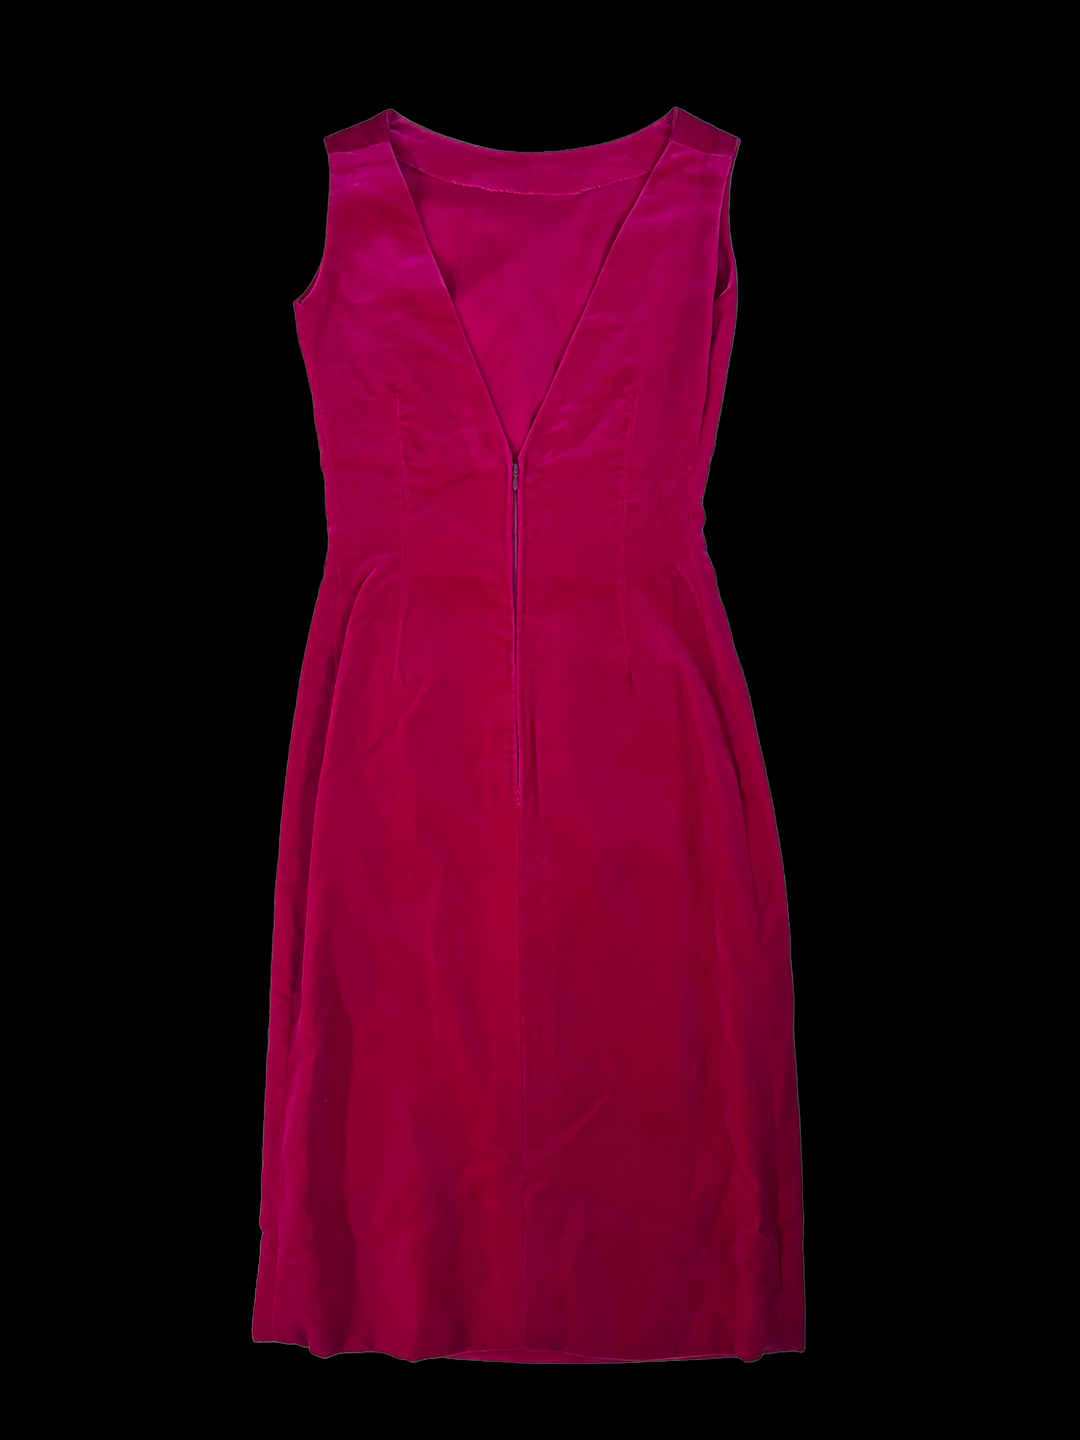 Vintage Velvet Pink Dress Women's Small